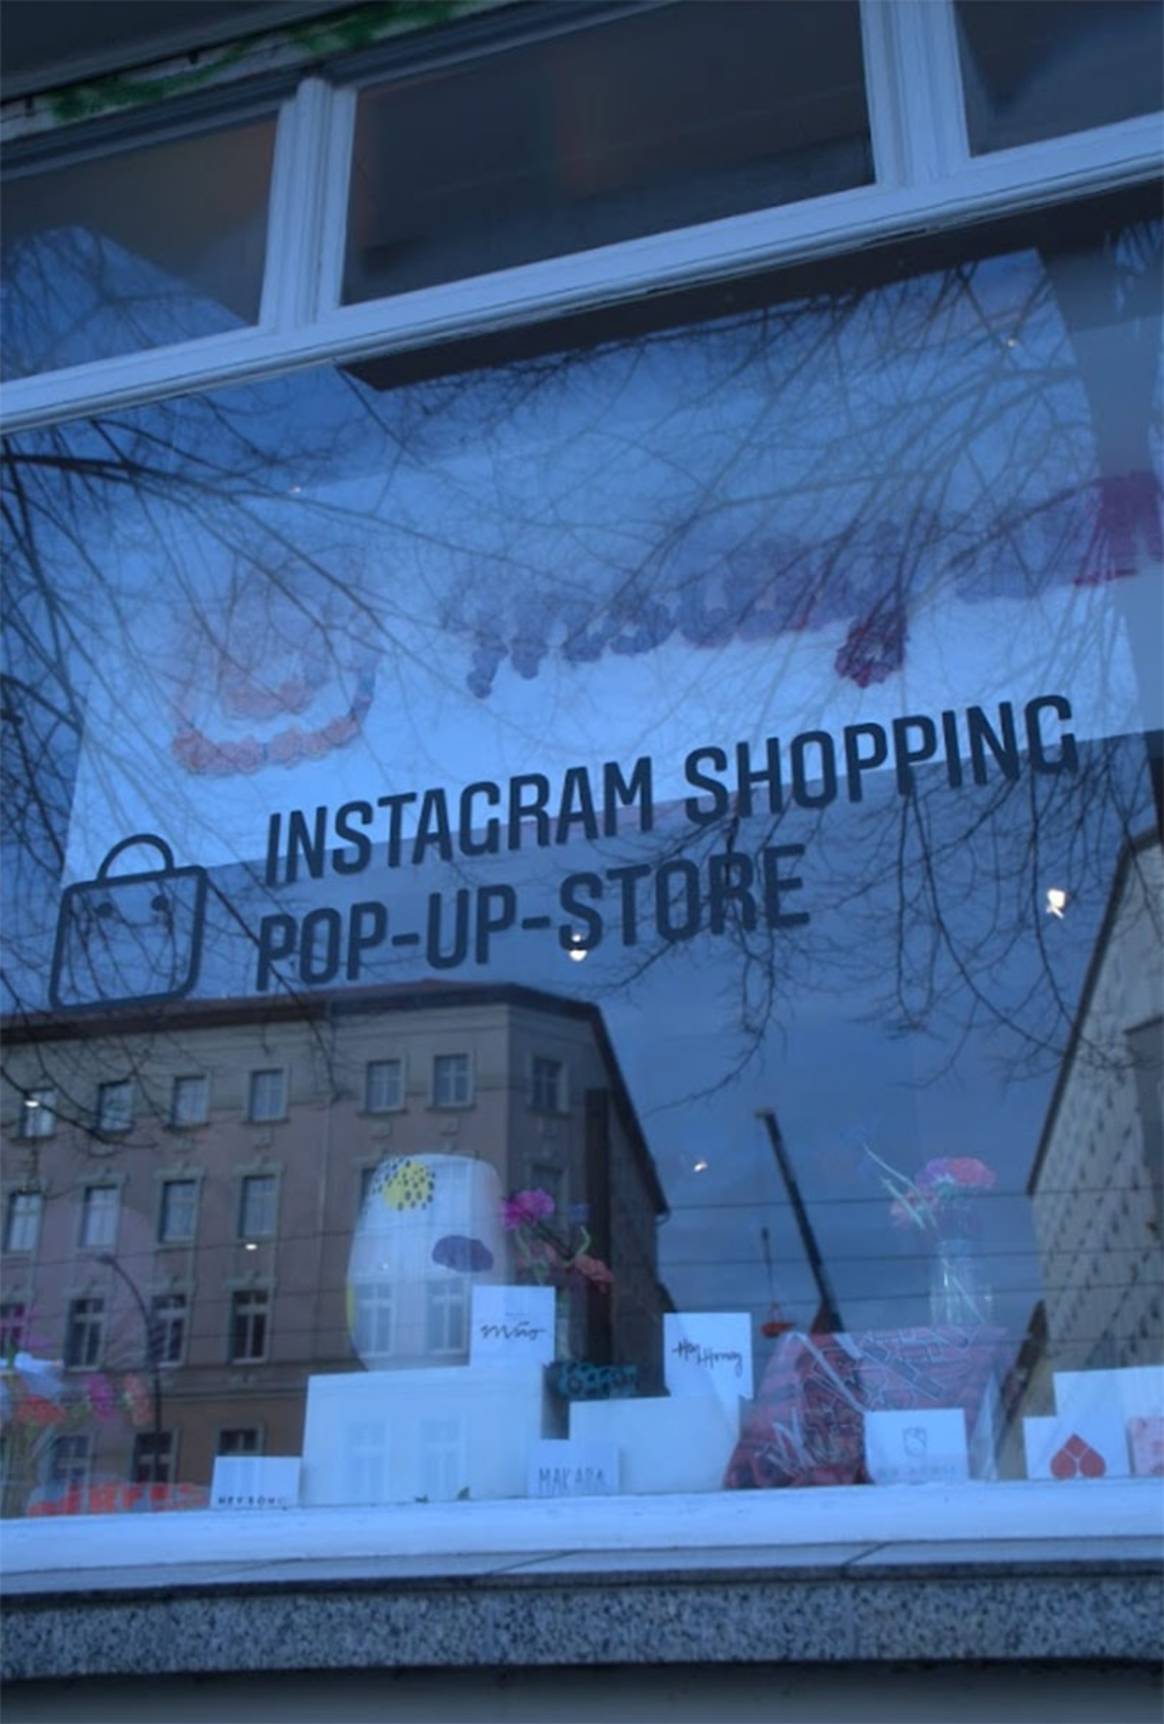 In Bildern: Instagram verknüpft Online und Offline-Shopping im Berliner Pop-Up 